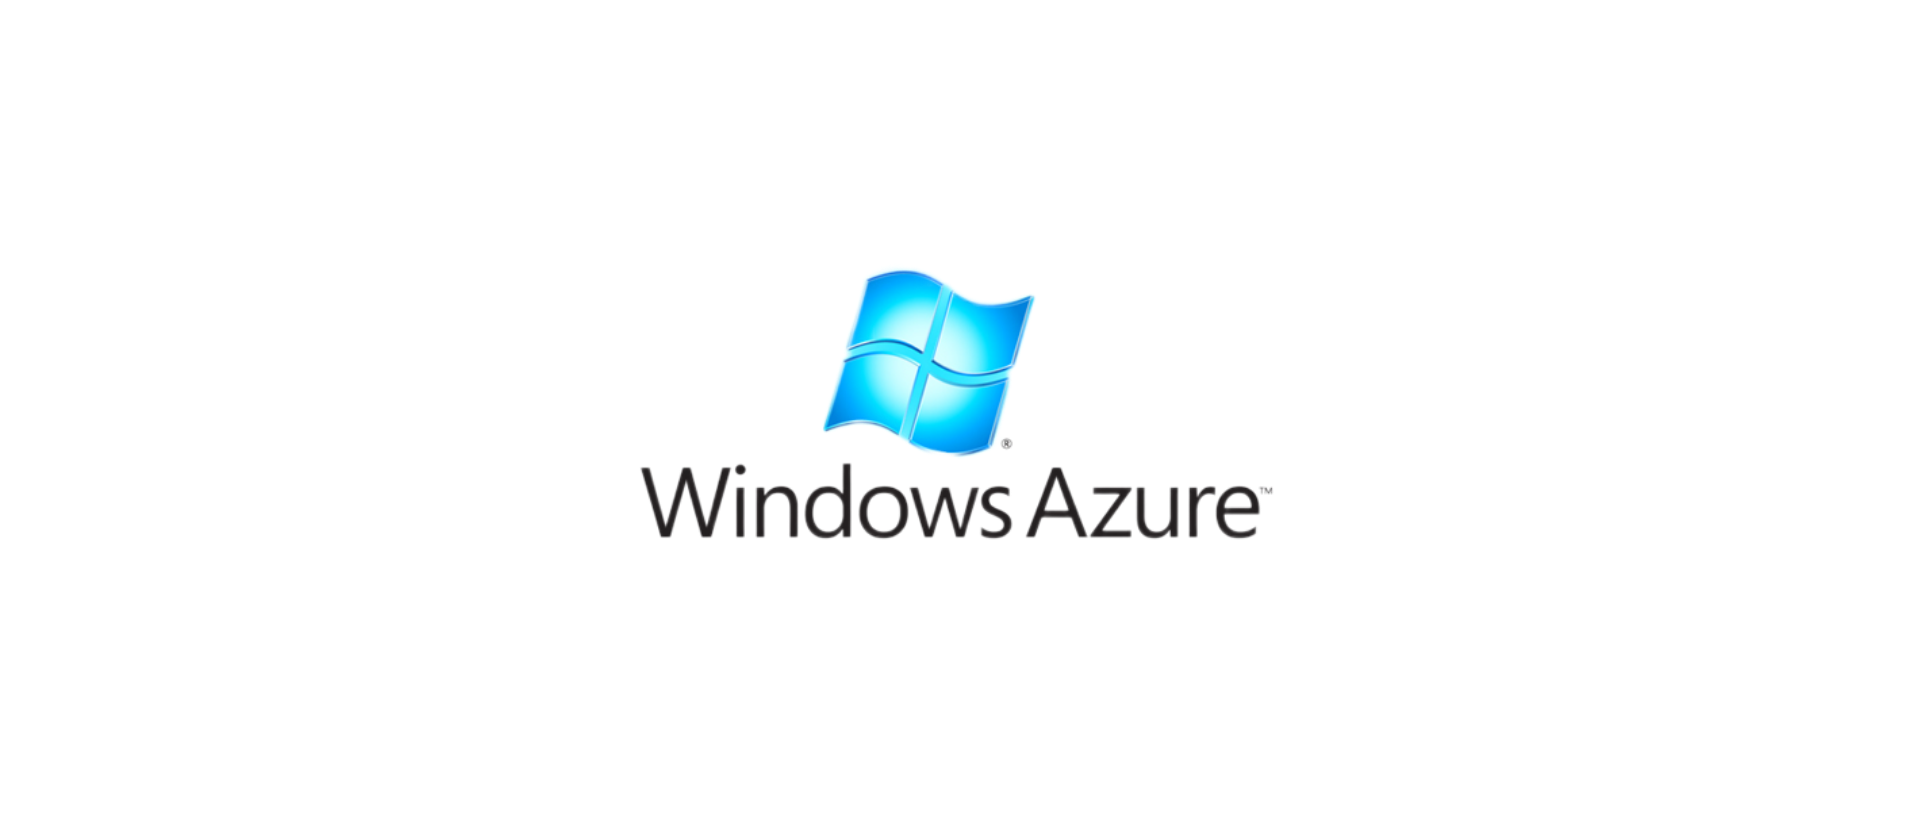 抖音、快手等短视频里反复出现的声音是怎么来的？微软出品的免费AI语音合成平台Azure。-www.131417.net